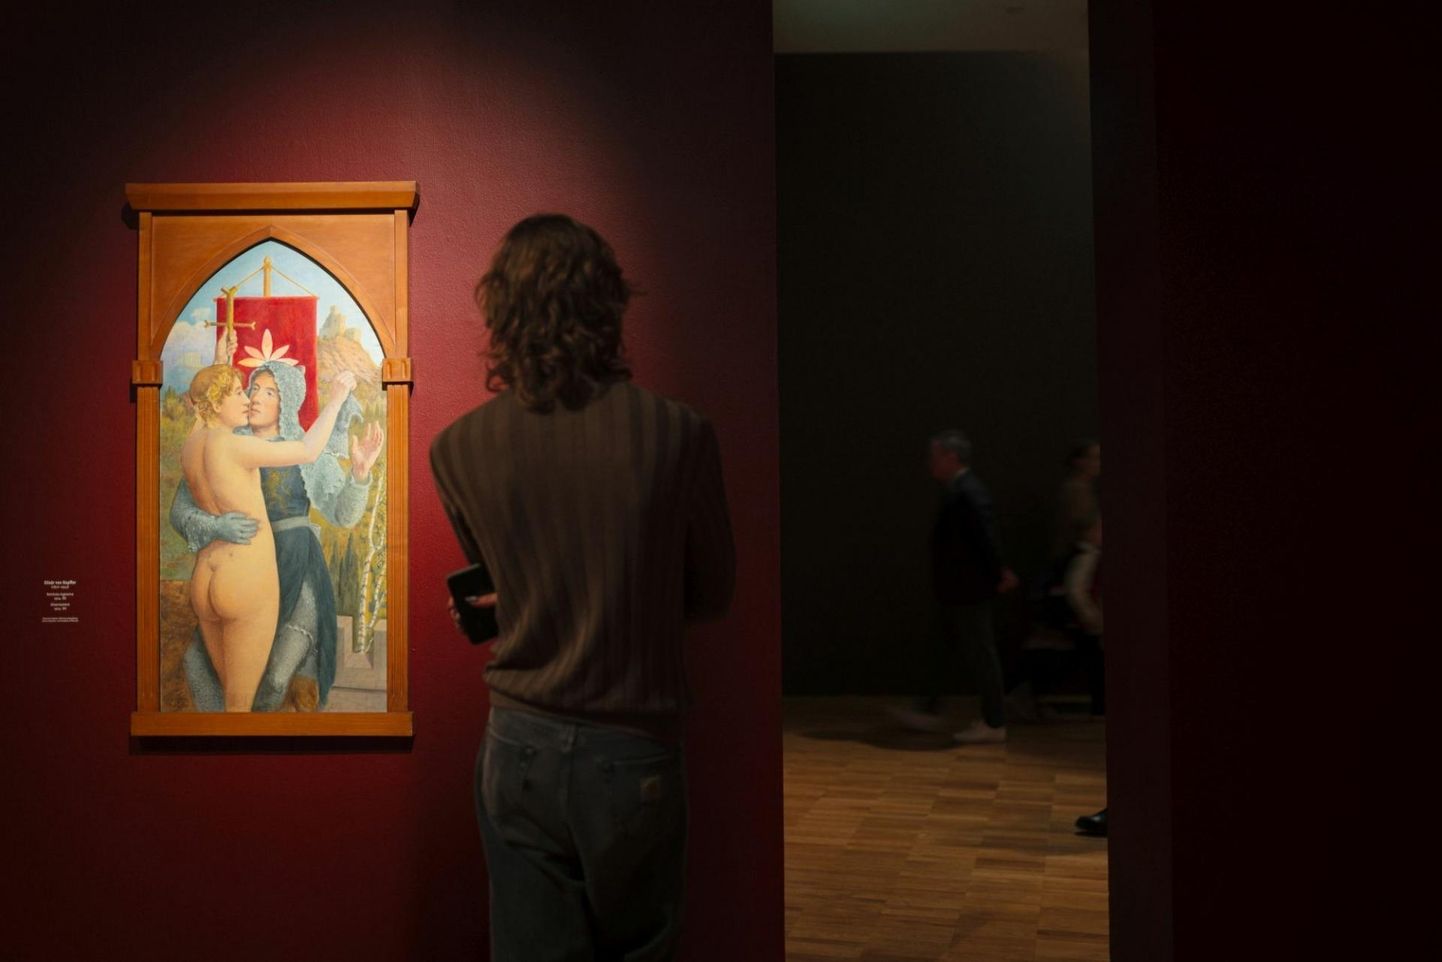 Näitusel on väljas Elisàr von Kupfferi antiigi ja renessansi mõjudega sümbolistlikud, enamasti religioosse alatooniga maalid.